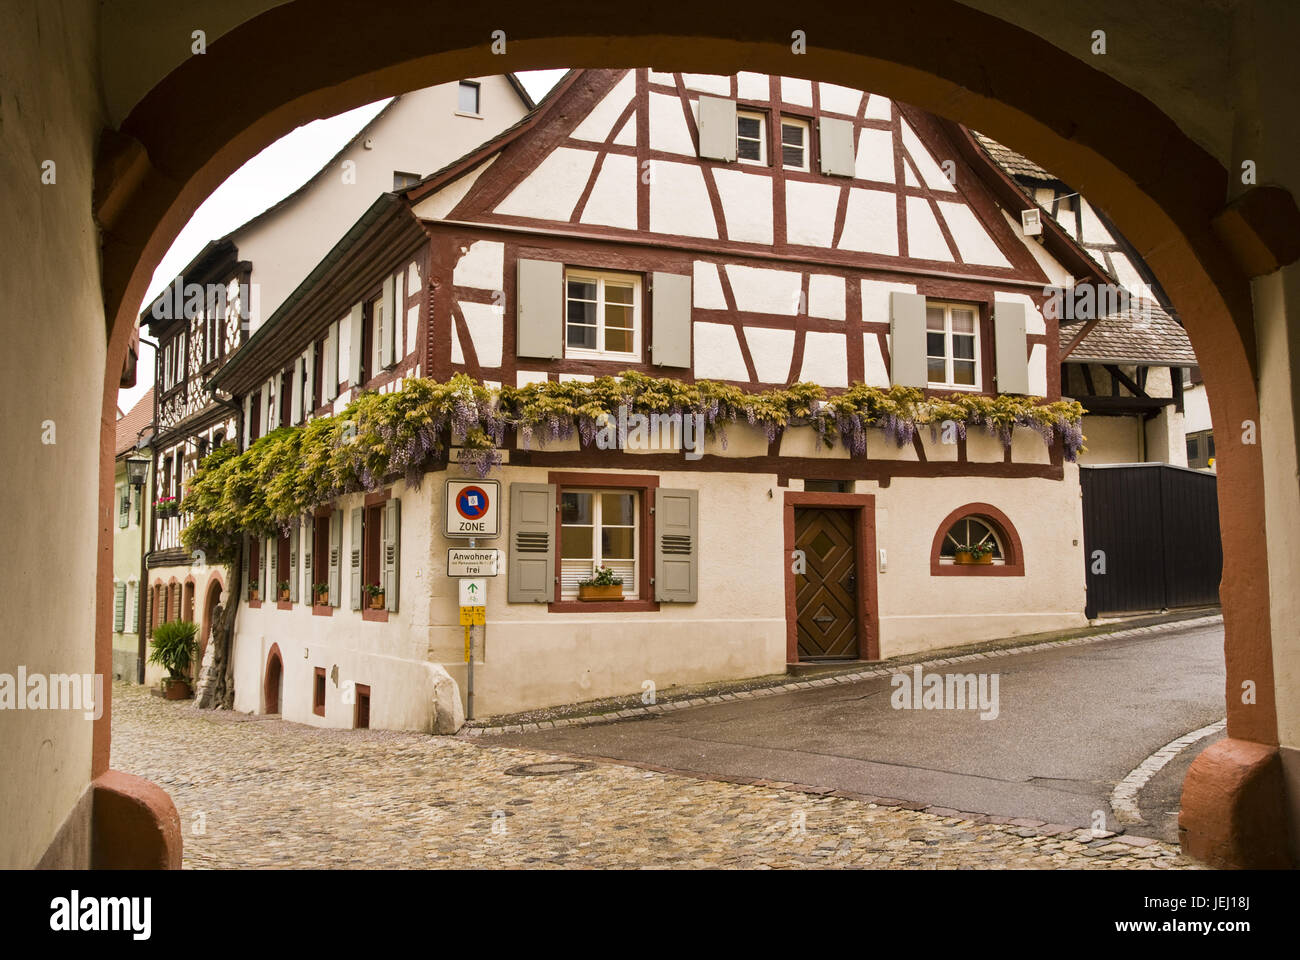 Old Town, Freiburg im Breisgau, Germany Stock Photo